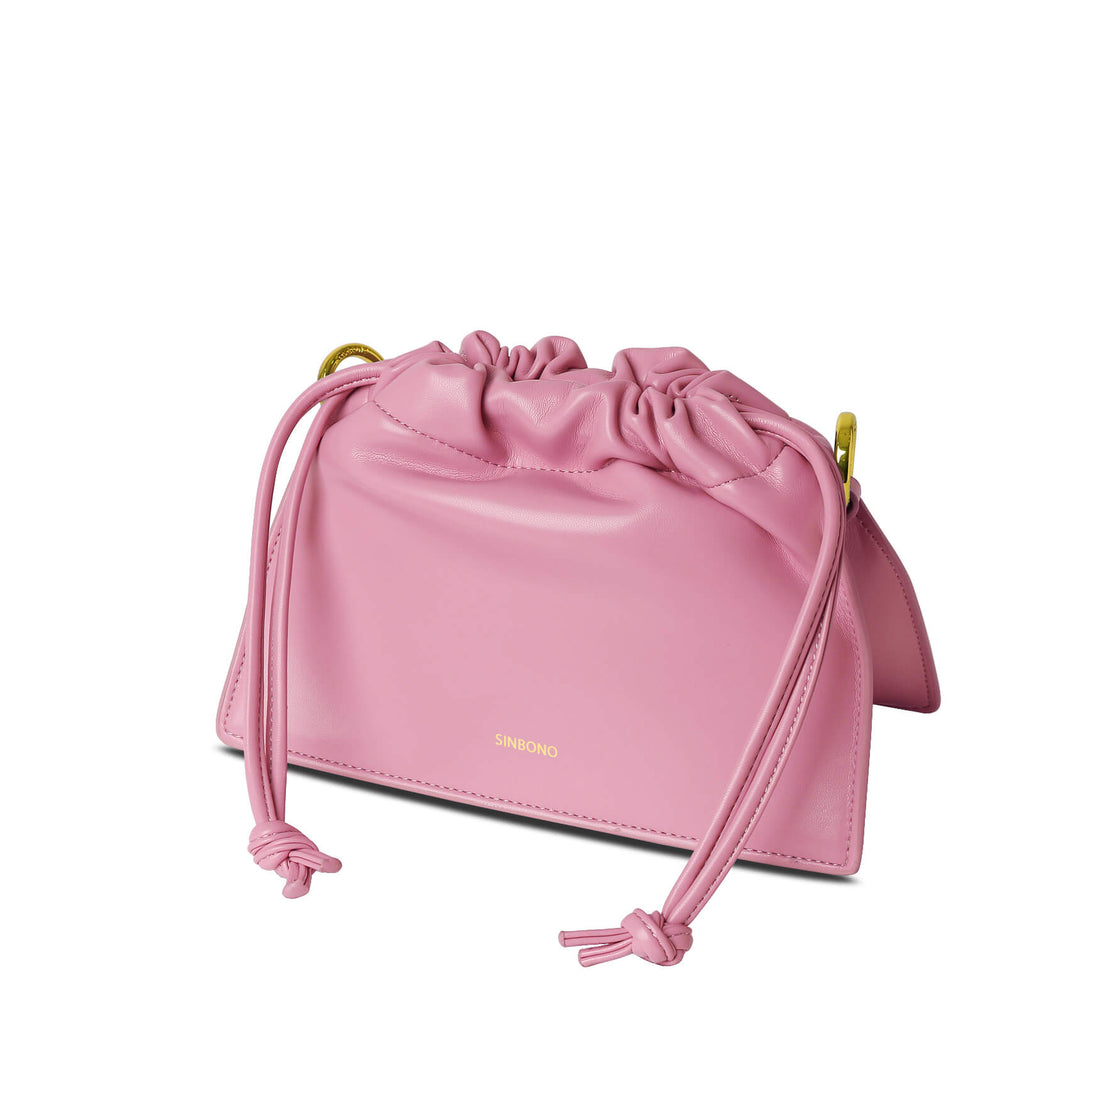 SINBONO Drawstring Handbag Pink